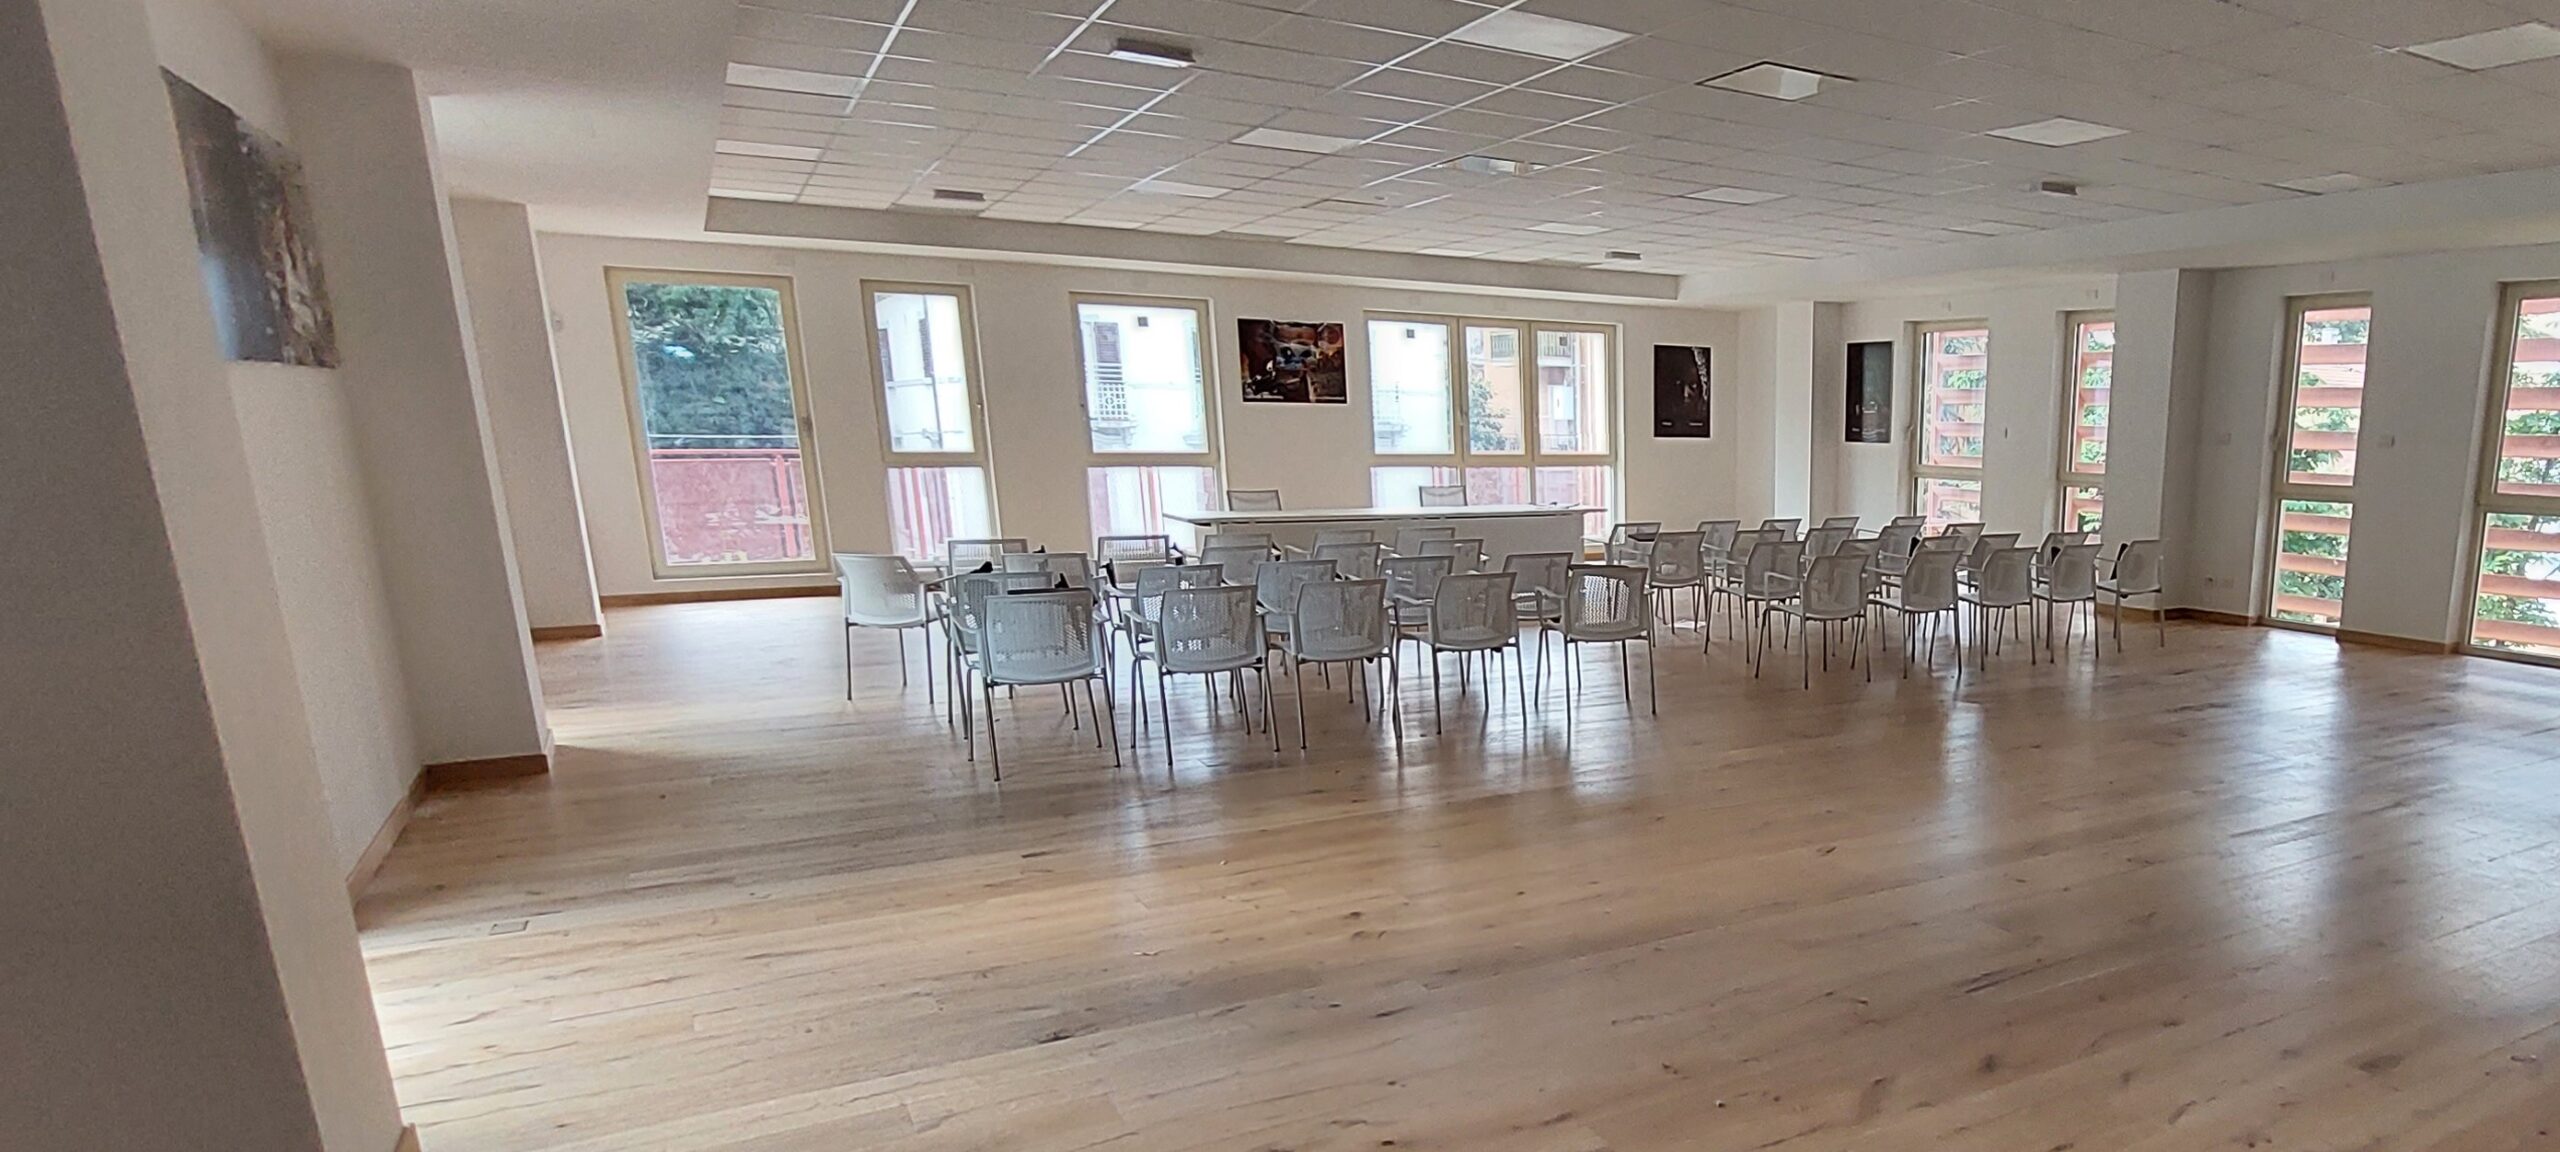 Un grande salone illuminato da grandi finestre, con pavimento in parquet e sedie da conferenza 